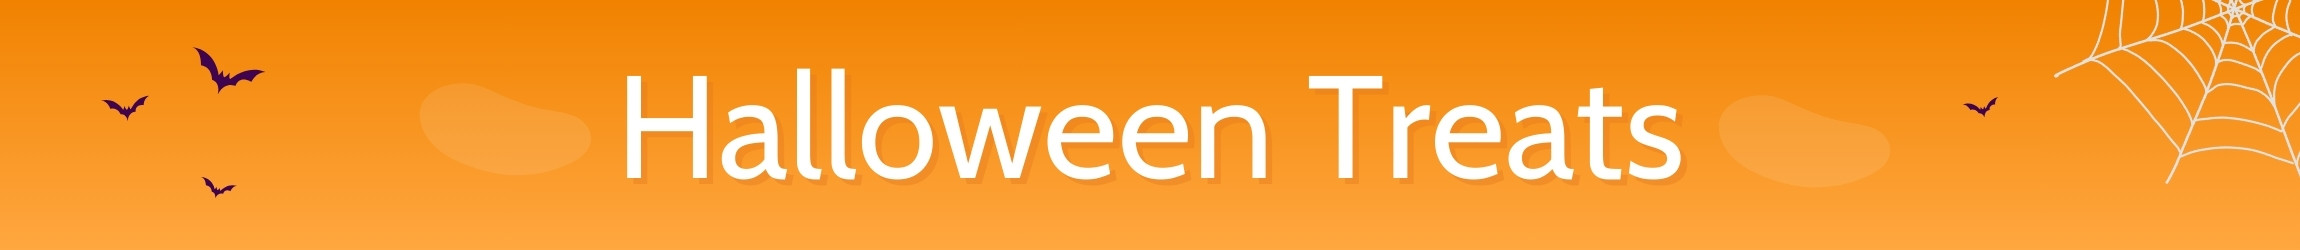 Halloween Banner background